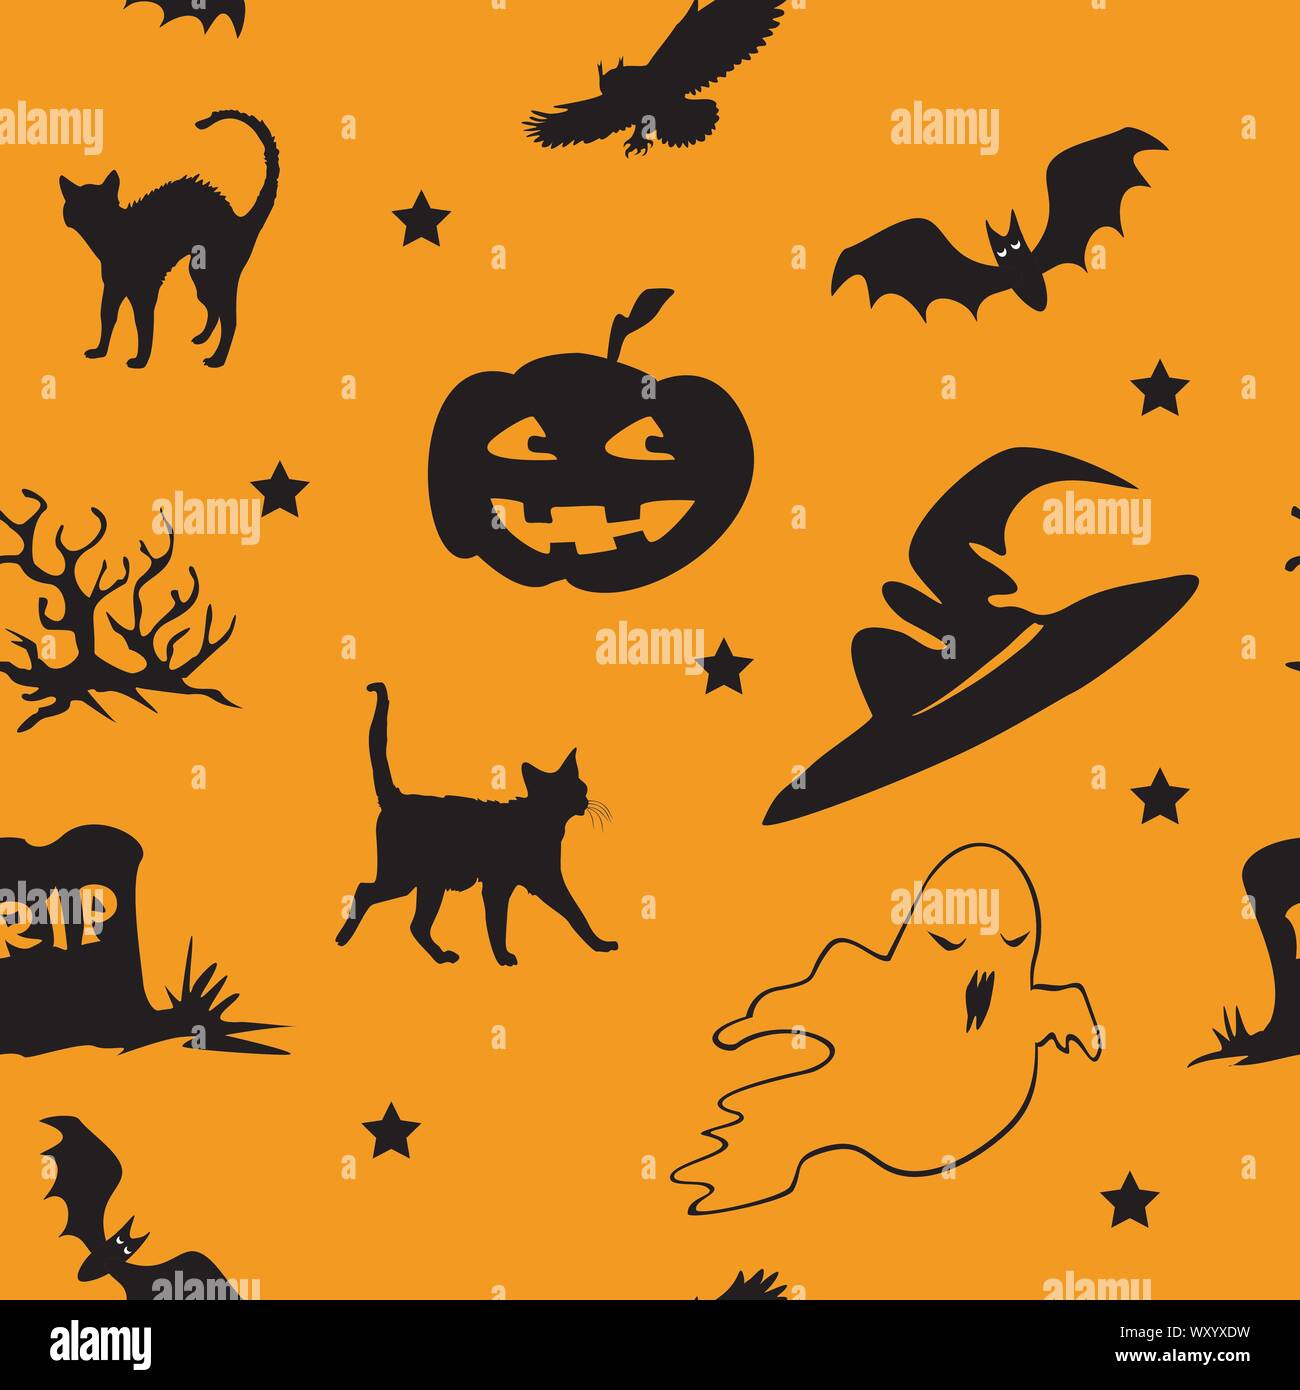 Vector pattern transparente avec différentes icônes d'Halloween (bat, OWL, ghost, tombe, chat noir, chapeau de sorcière, cimetière,stars ) sur fond orange, mauvais stock Illustration de Vecteur